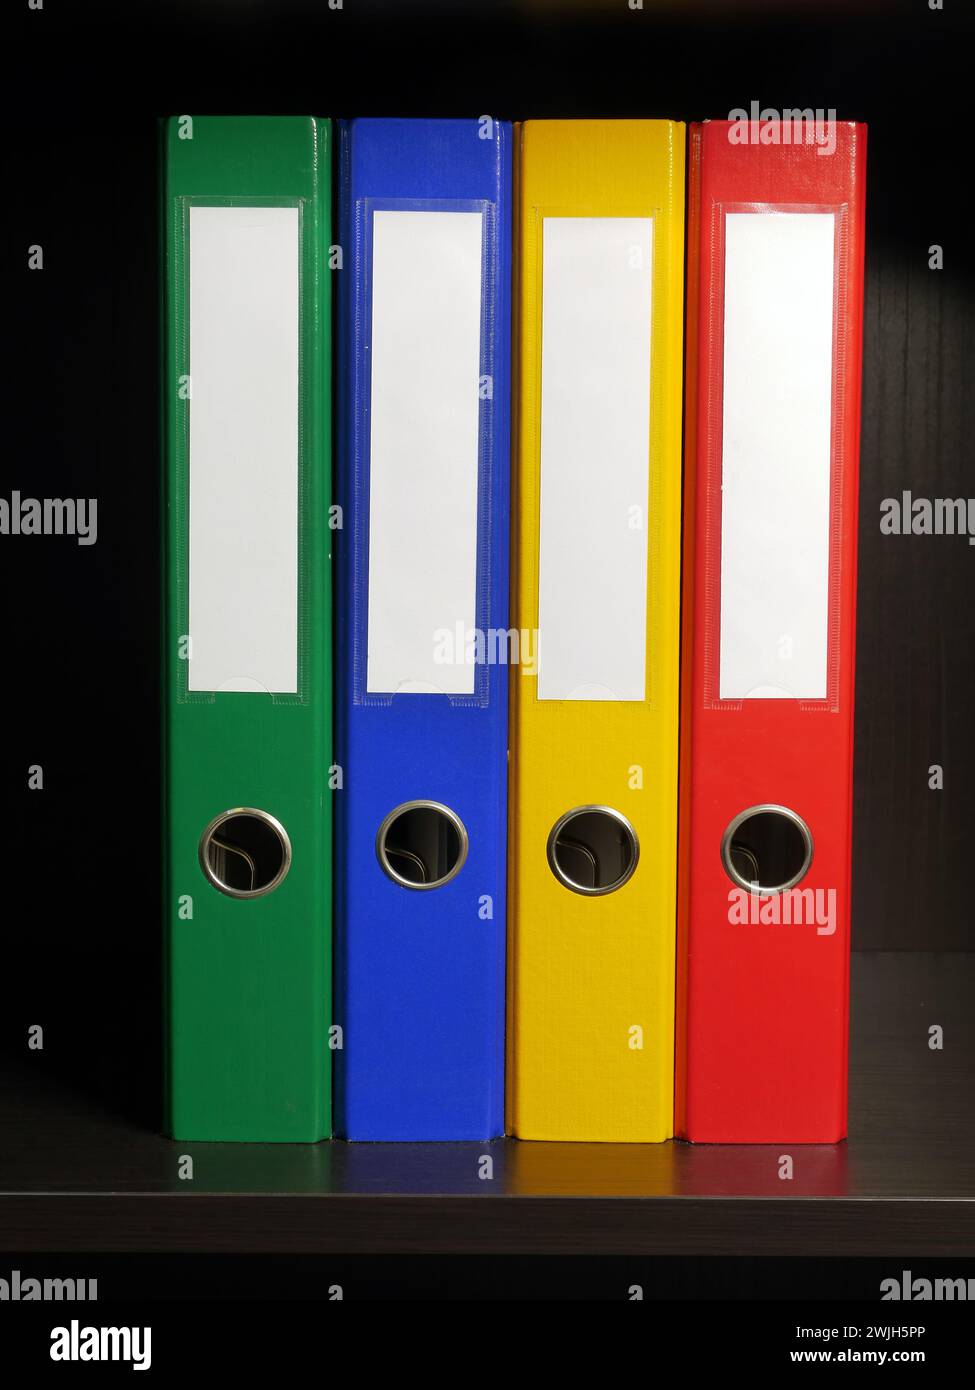 Quatre classeurs vides de couleurs vert, bleu, jaune et rouge disposés à l'intérieur du coffret noir Banque D'Images